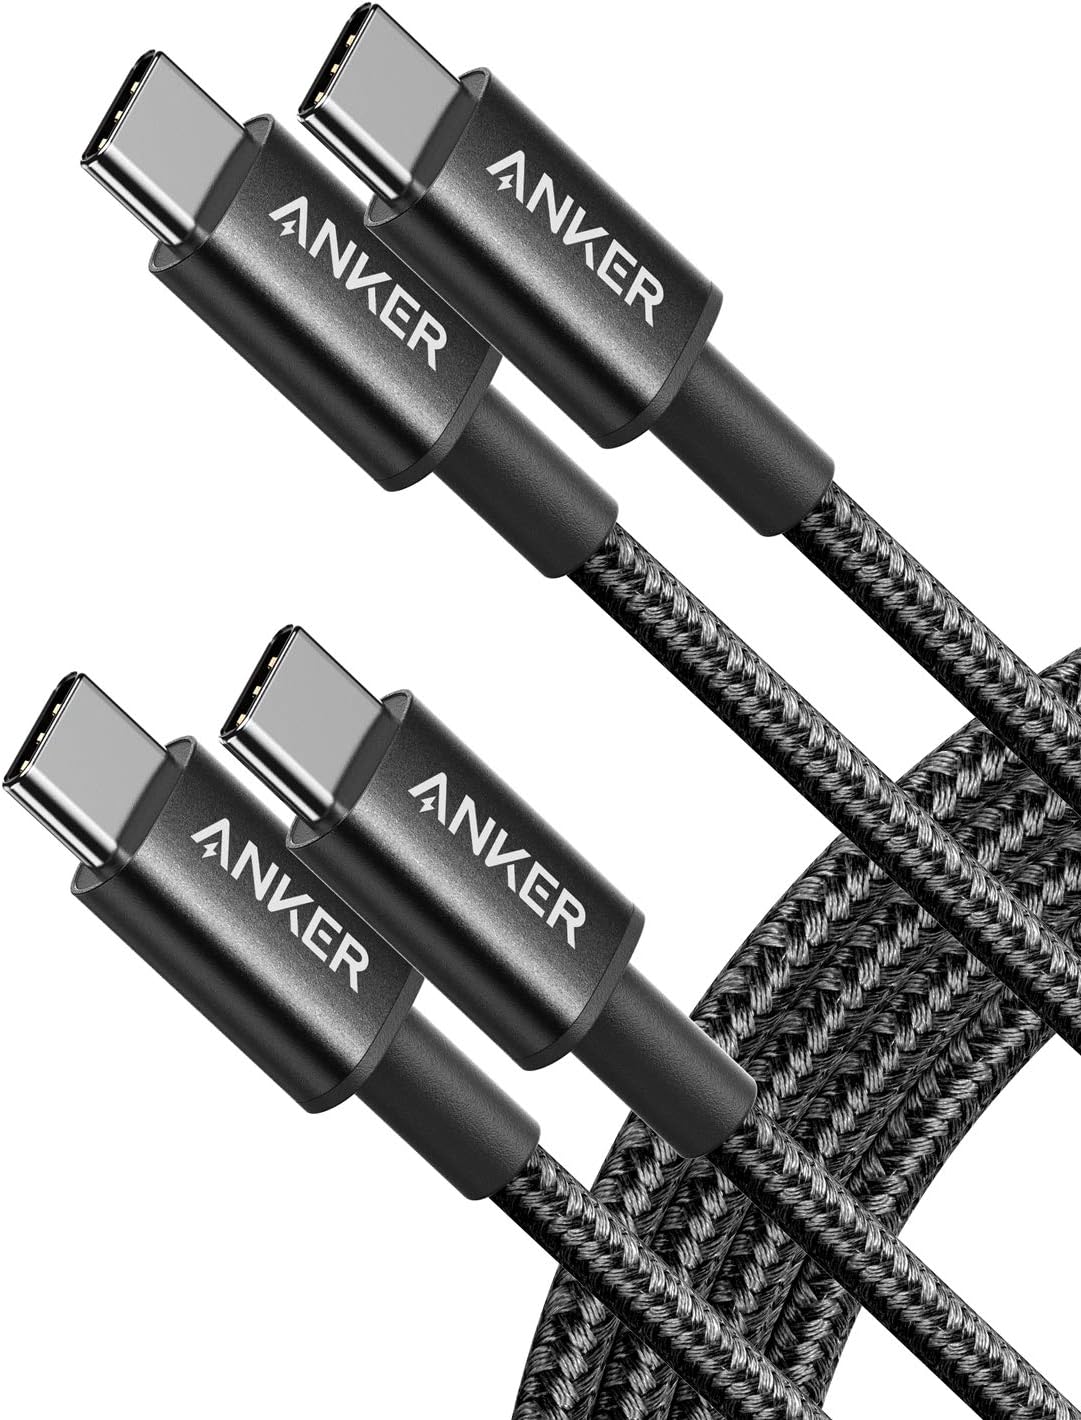 Anker New Nylon Series 3 USB-C auf USB-C 2er-Pack